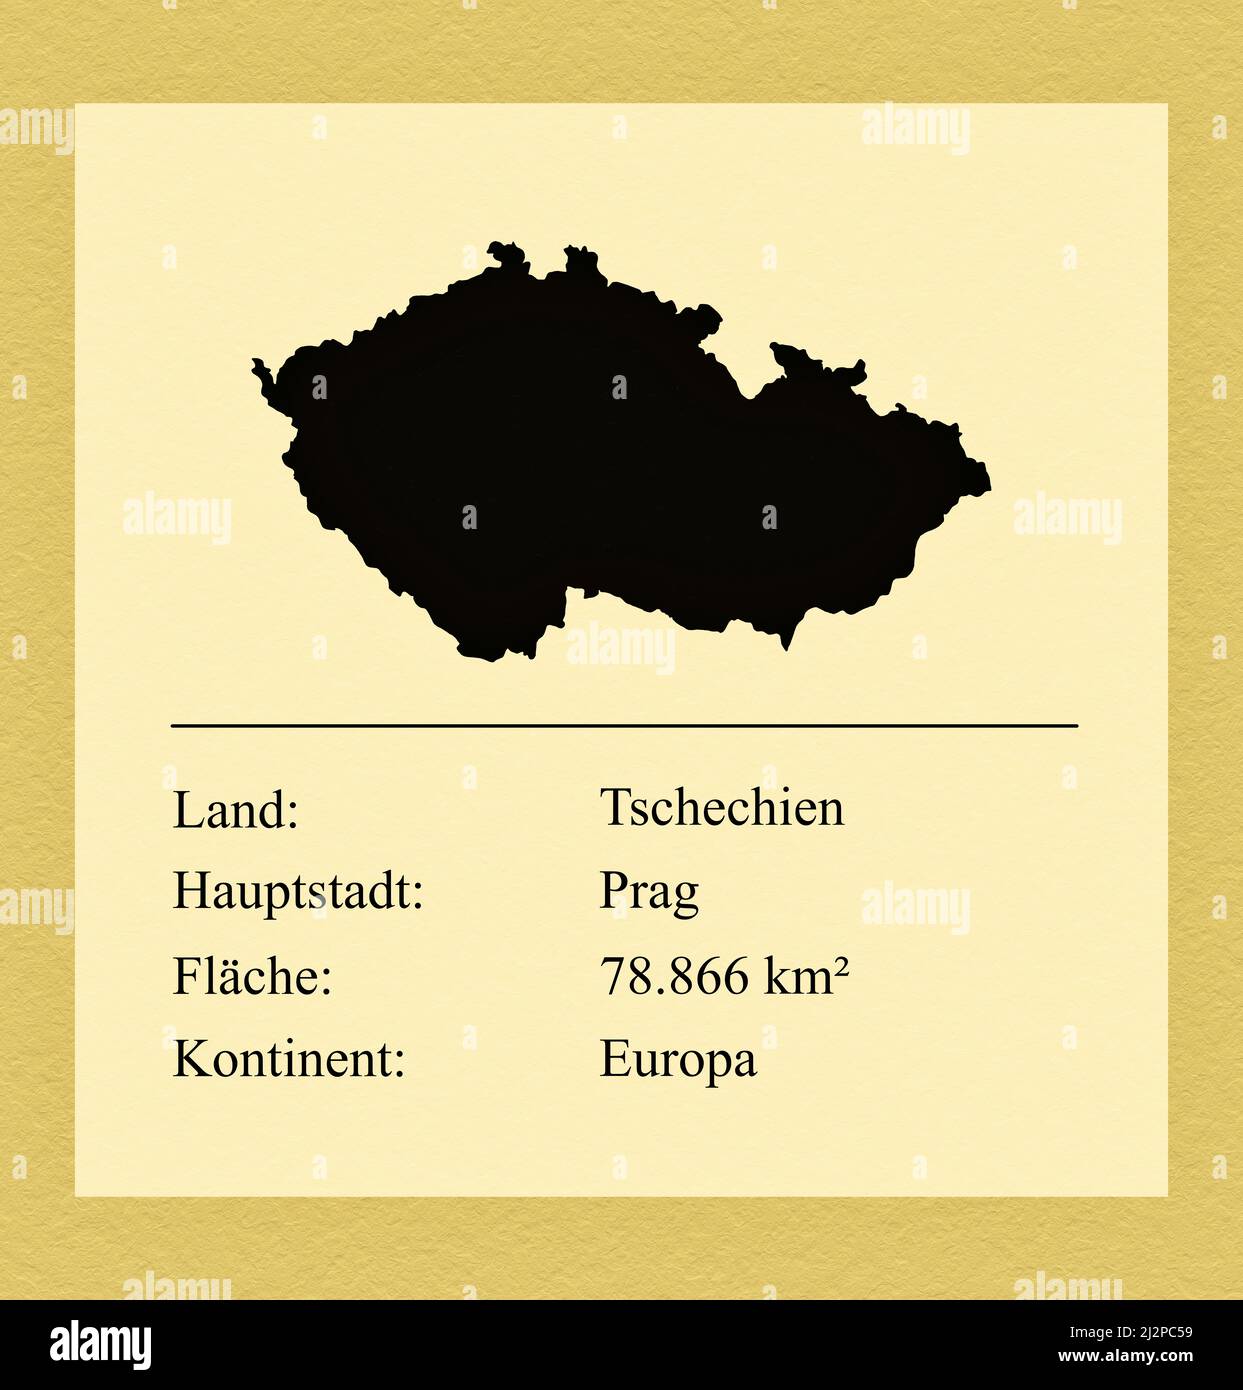 Umrisse des Landes Tschechien, darunter ein kleiner Steckbrief mit Ländernamen, Hauptstadt, Fläche und Kontinent Stock Photo